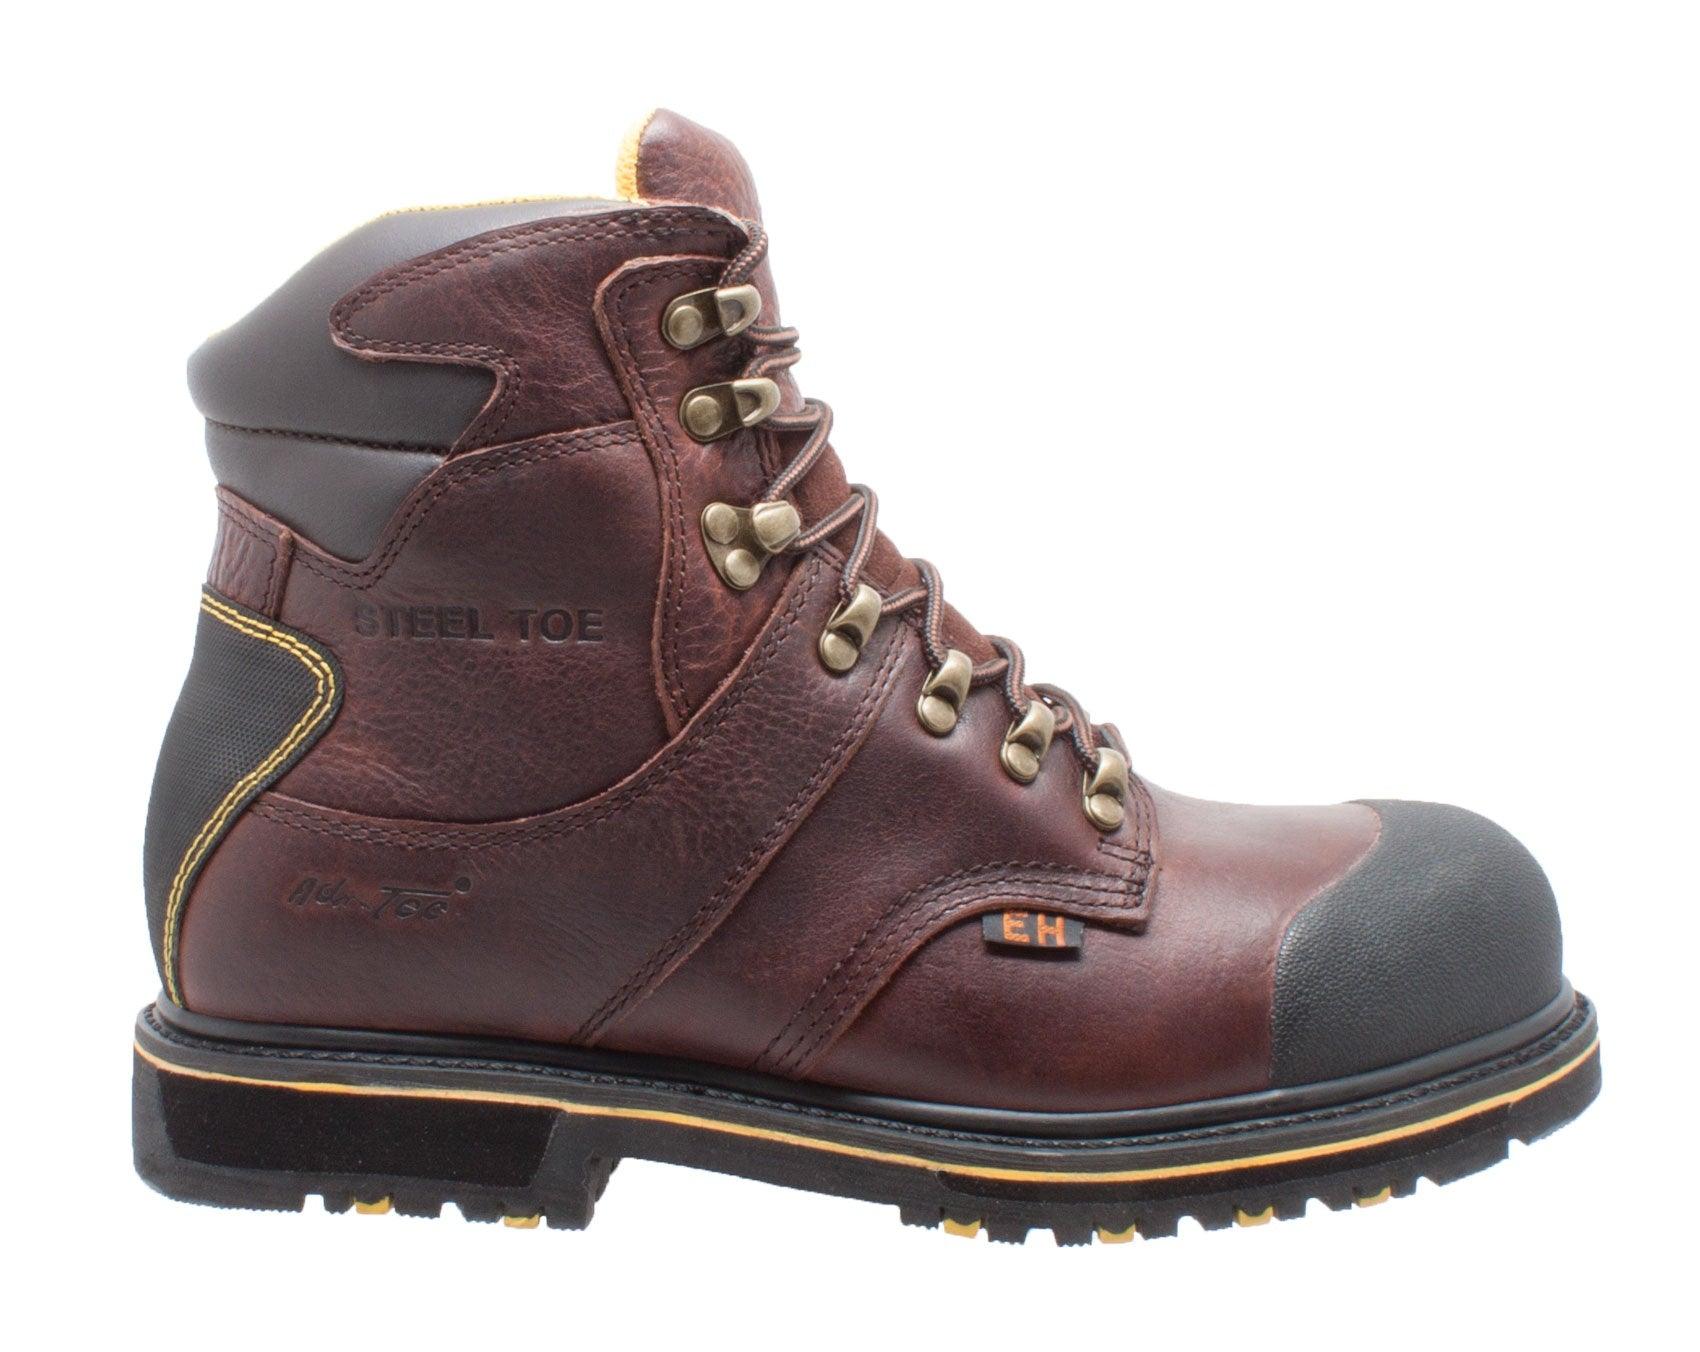 AdTec Men's 6" Steel Toe Waterproof Work Boot Dark Brown - Flyclothing LLC